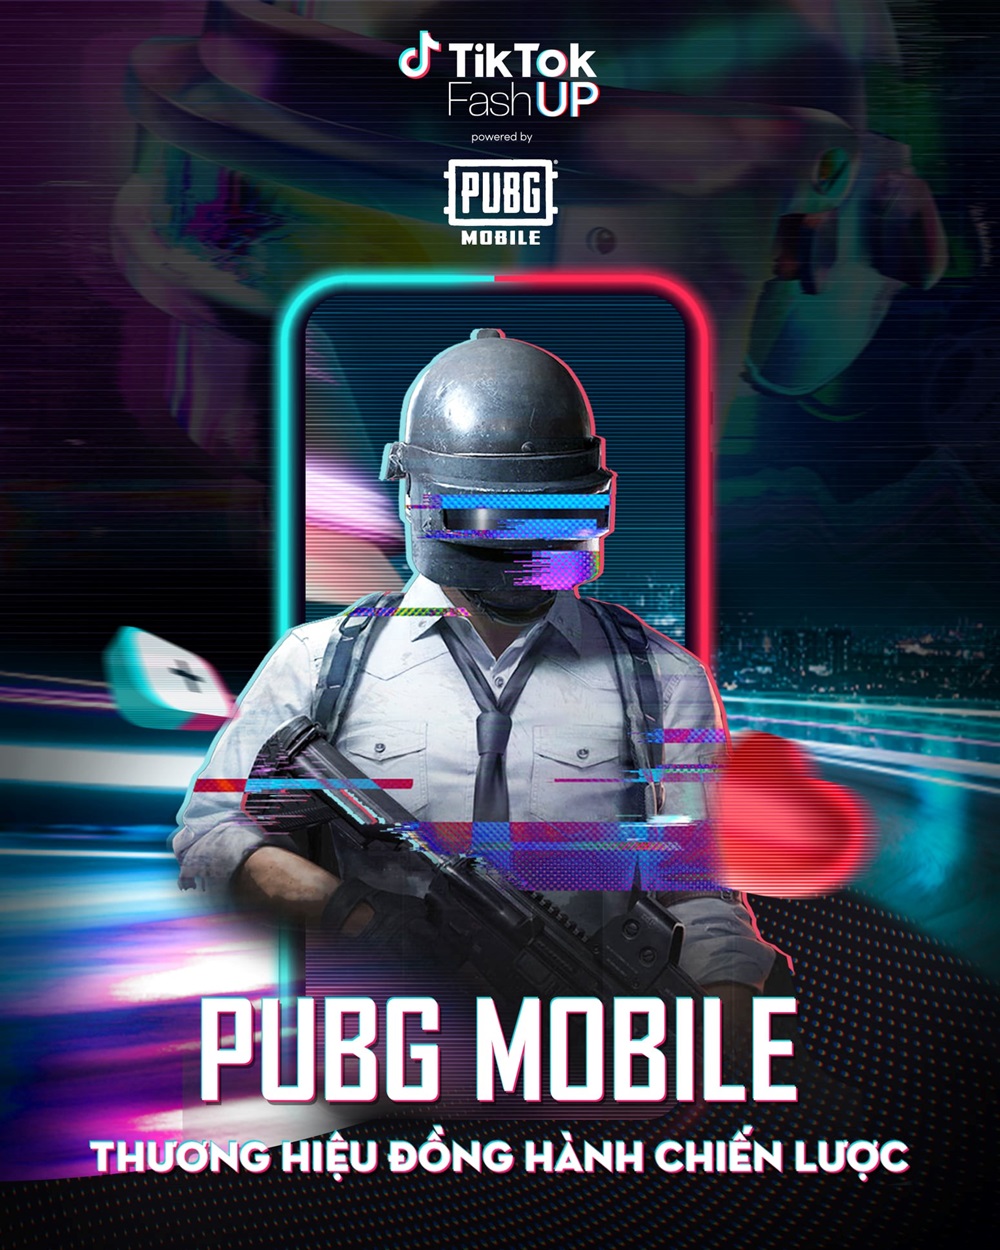 PUBG Mobile đồng hành TikTok mang tới sân chơi cực chất cho giới trẻ - Ảnh 1